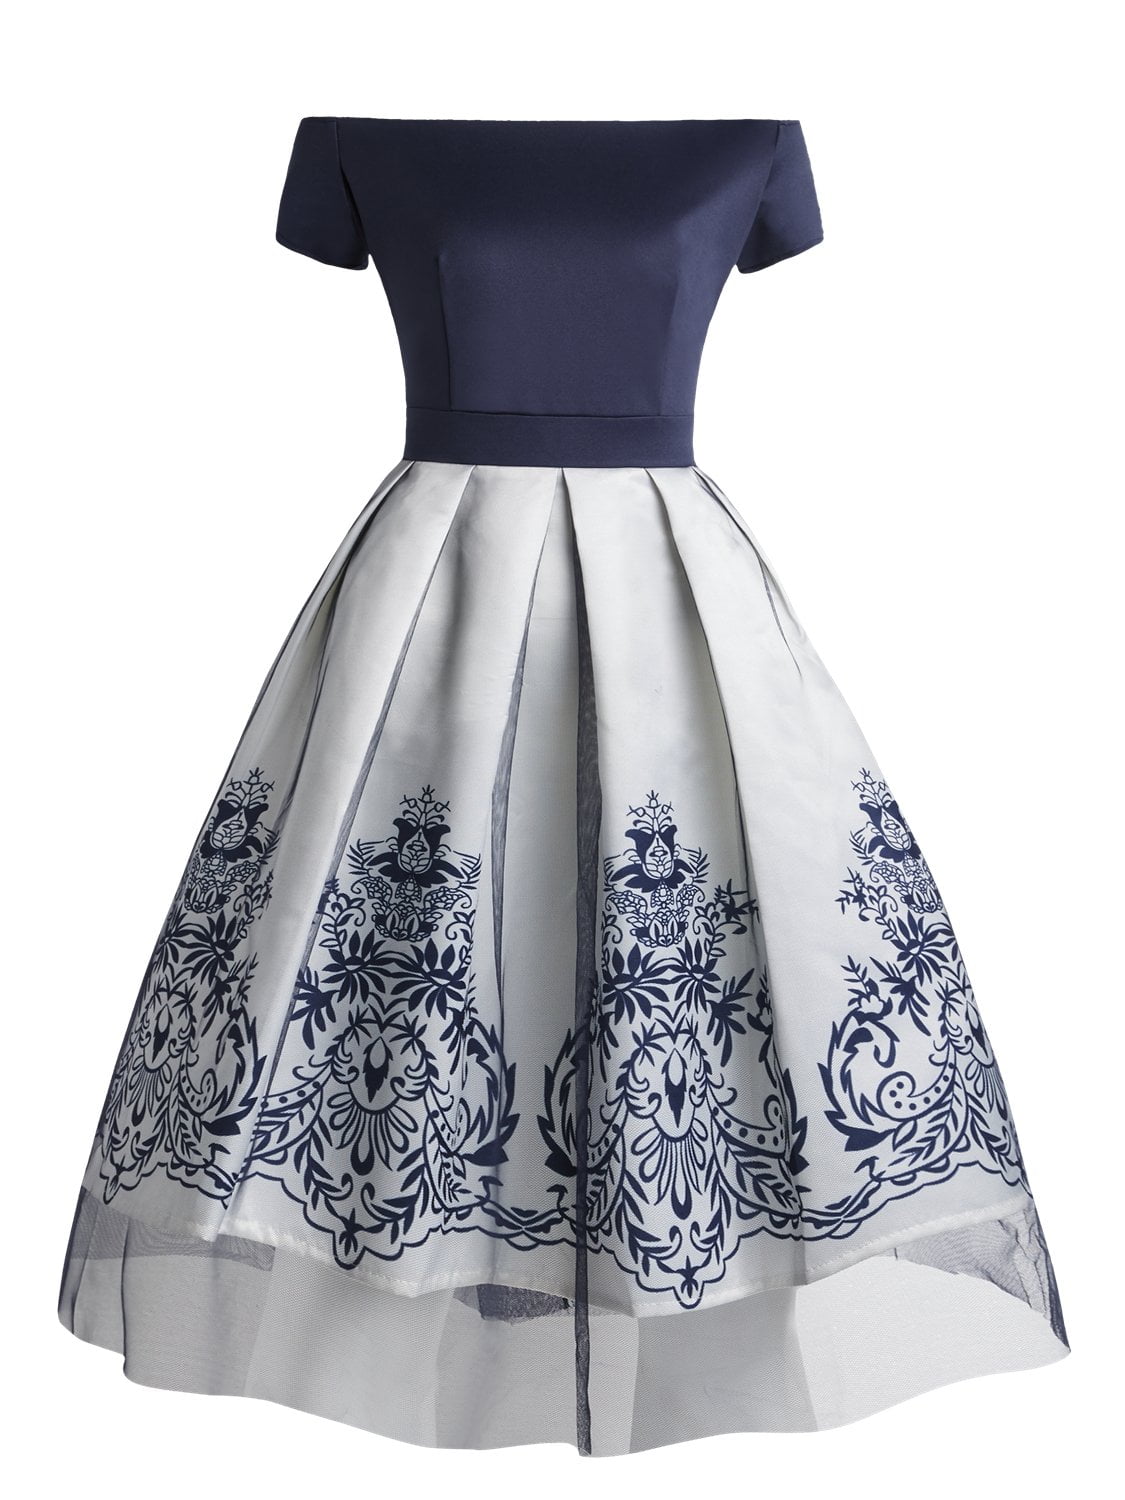 Off the Shoulder Dress Mesh 1950s Elegant Floral Dress - Vintage-Retro